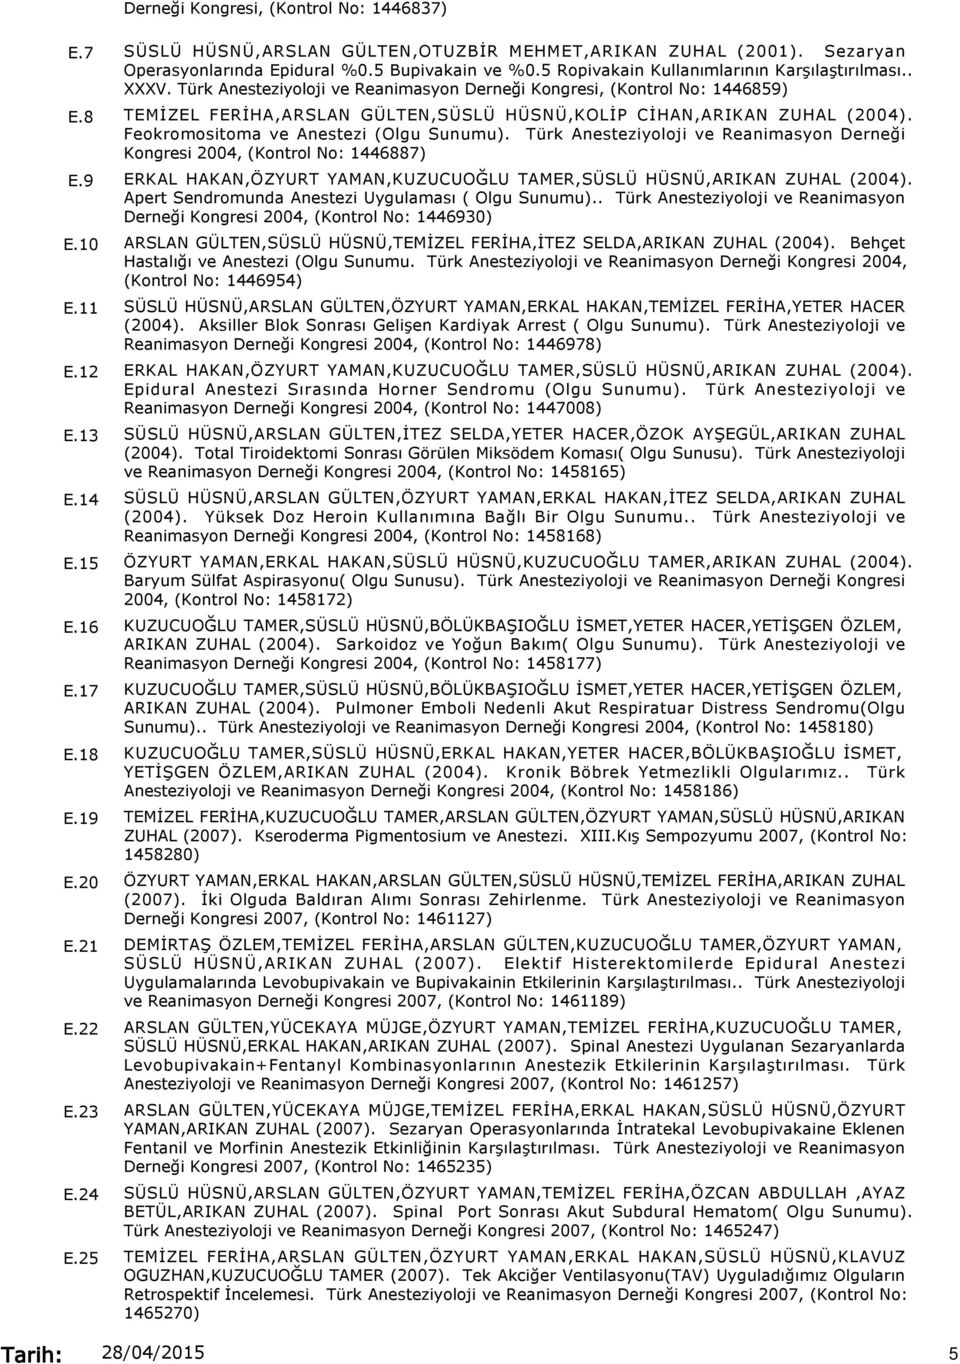 Türk Anesteziyoloji ve Reanimasyon Derneği Kongresi, (Kontrol No: 1446859) TEMİZEL FERİHA,ARSLAN GÜLTEN,SÜSLÜ HÜSNÜ,KOLİP CİHAN,ARIKAN ZUHAL (2004). Feokromositoma ve Anestezi (Olgu Sunumu).